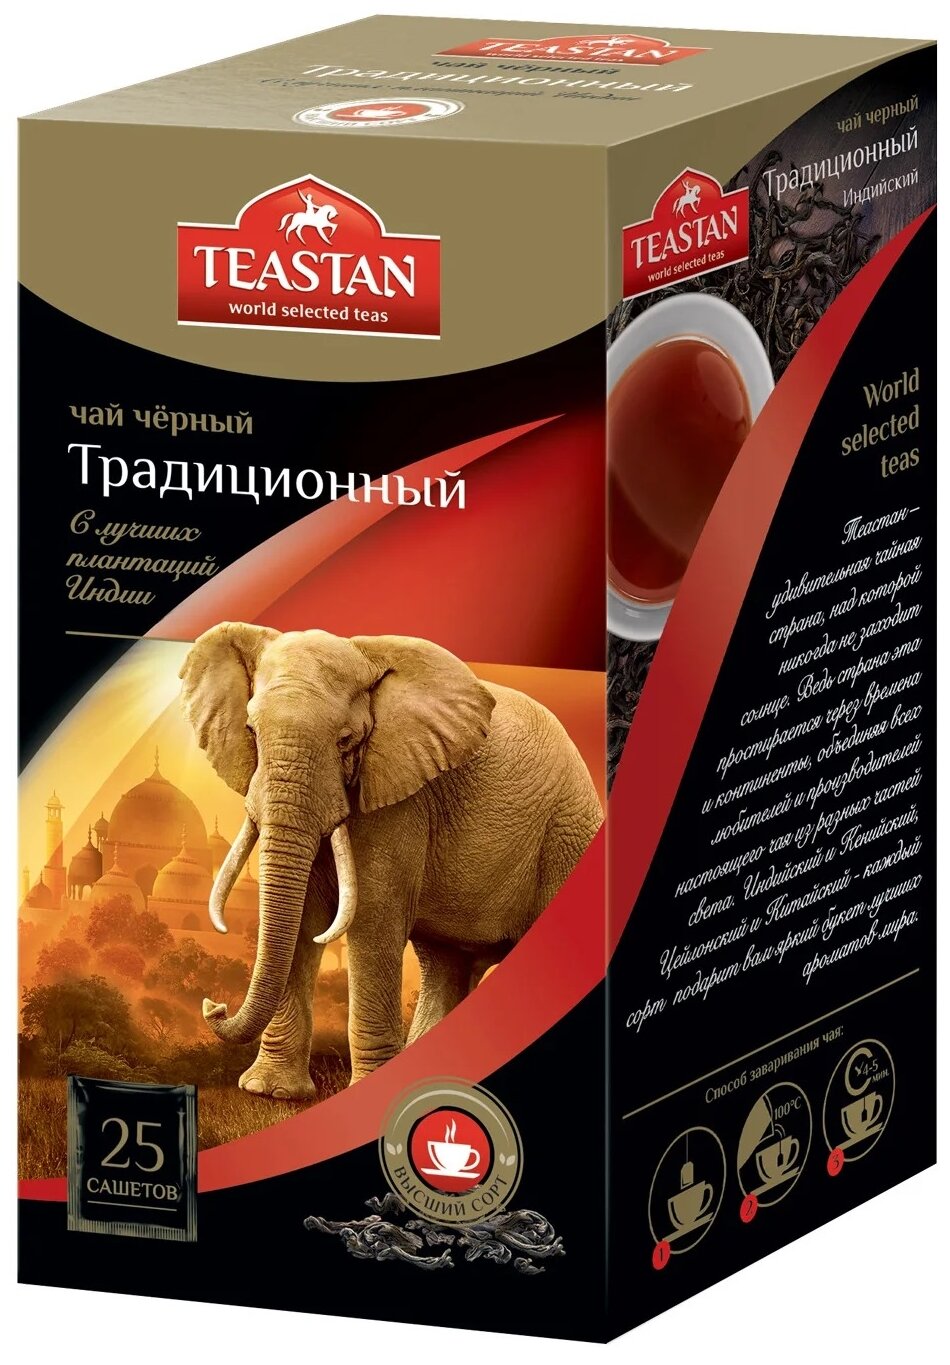 Чай черный Teastan Традиционный в сашетах, 25 пак. - фотография № 1